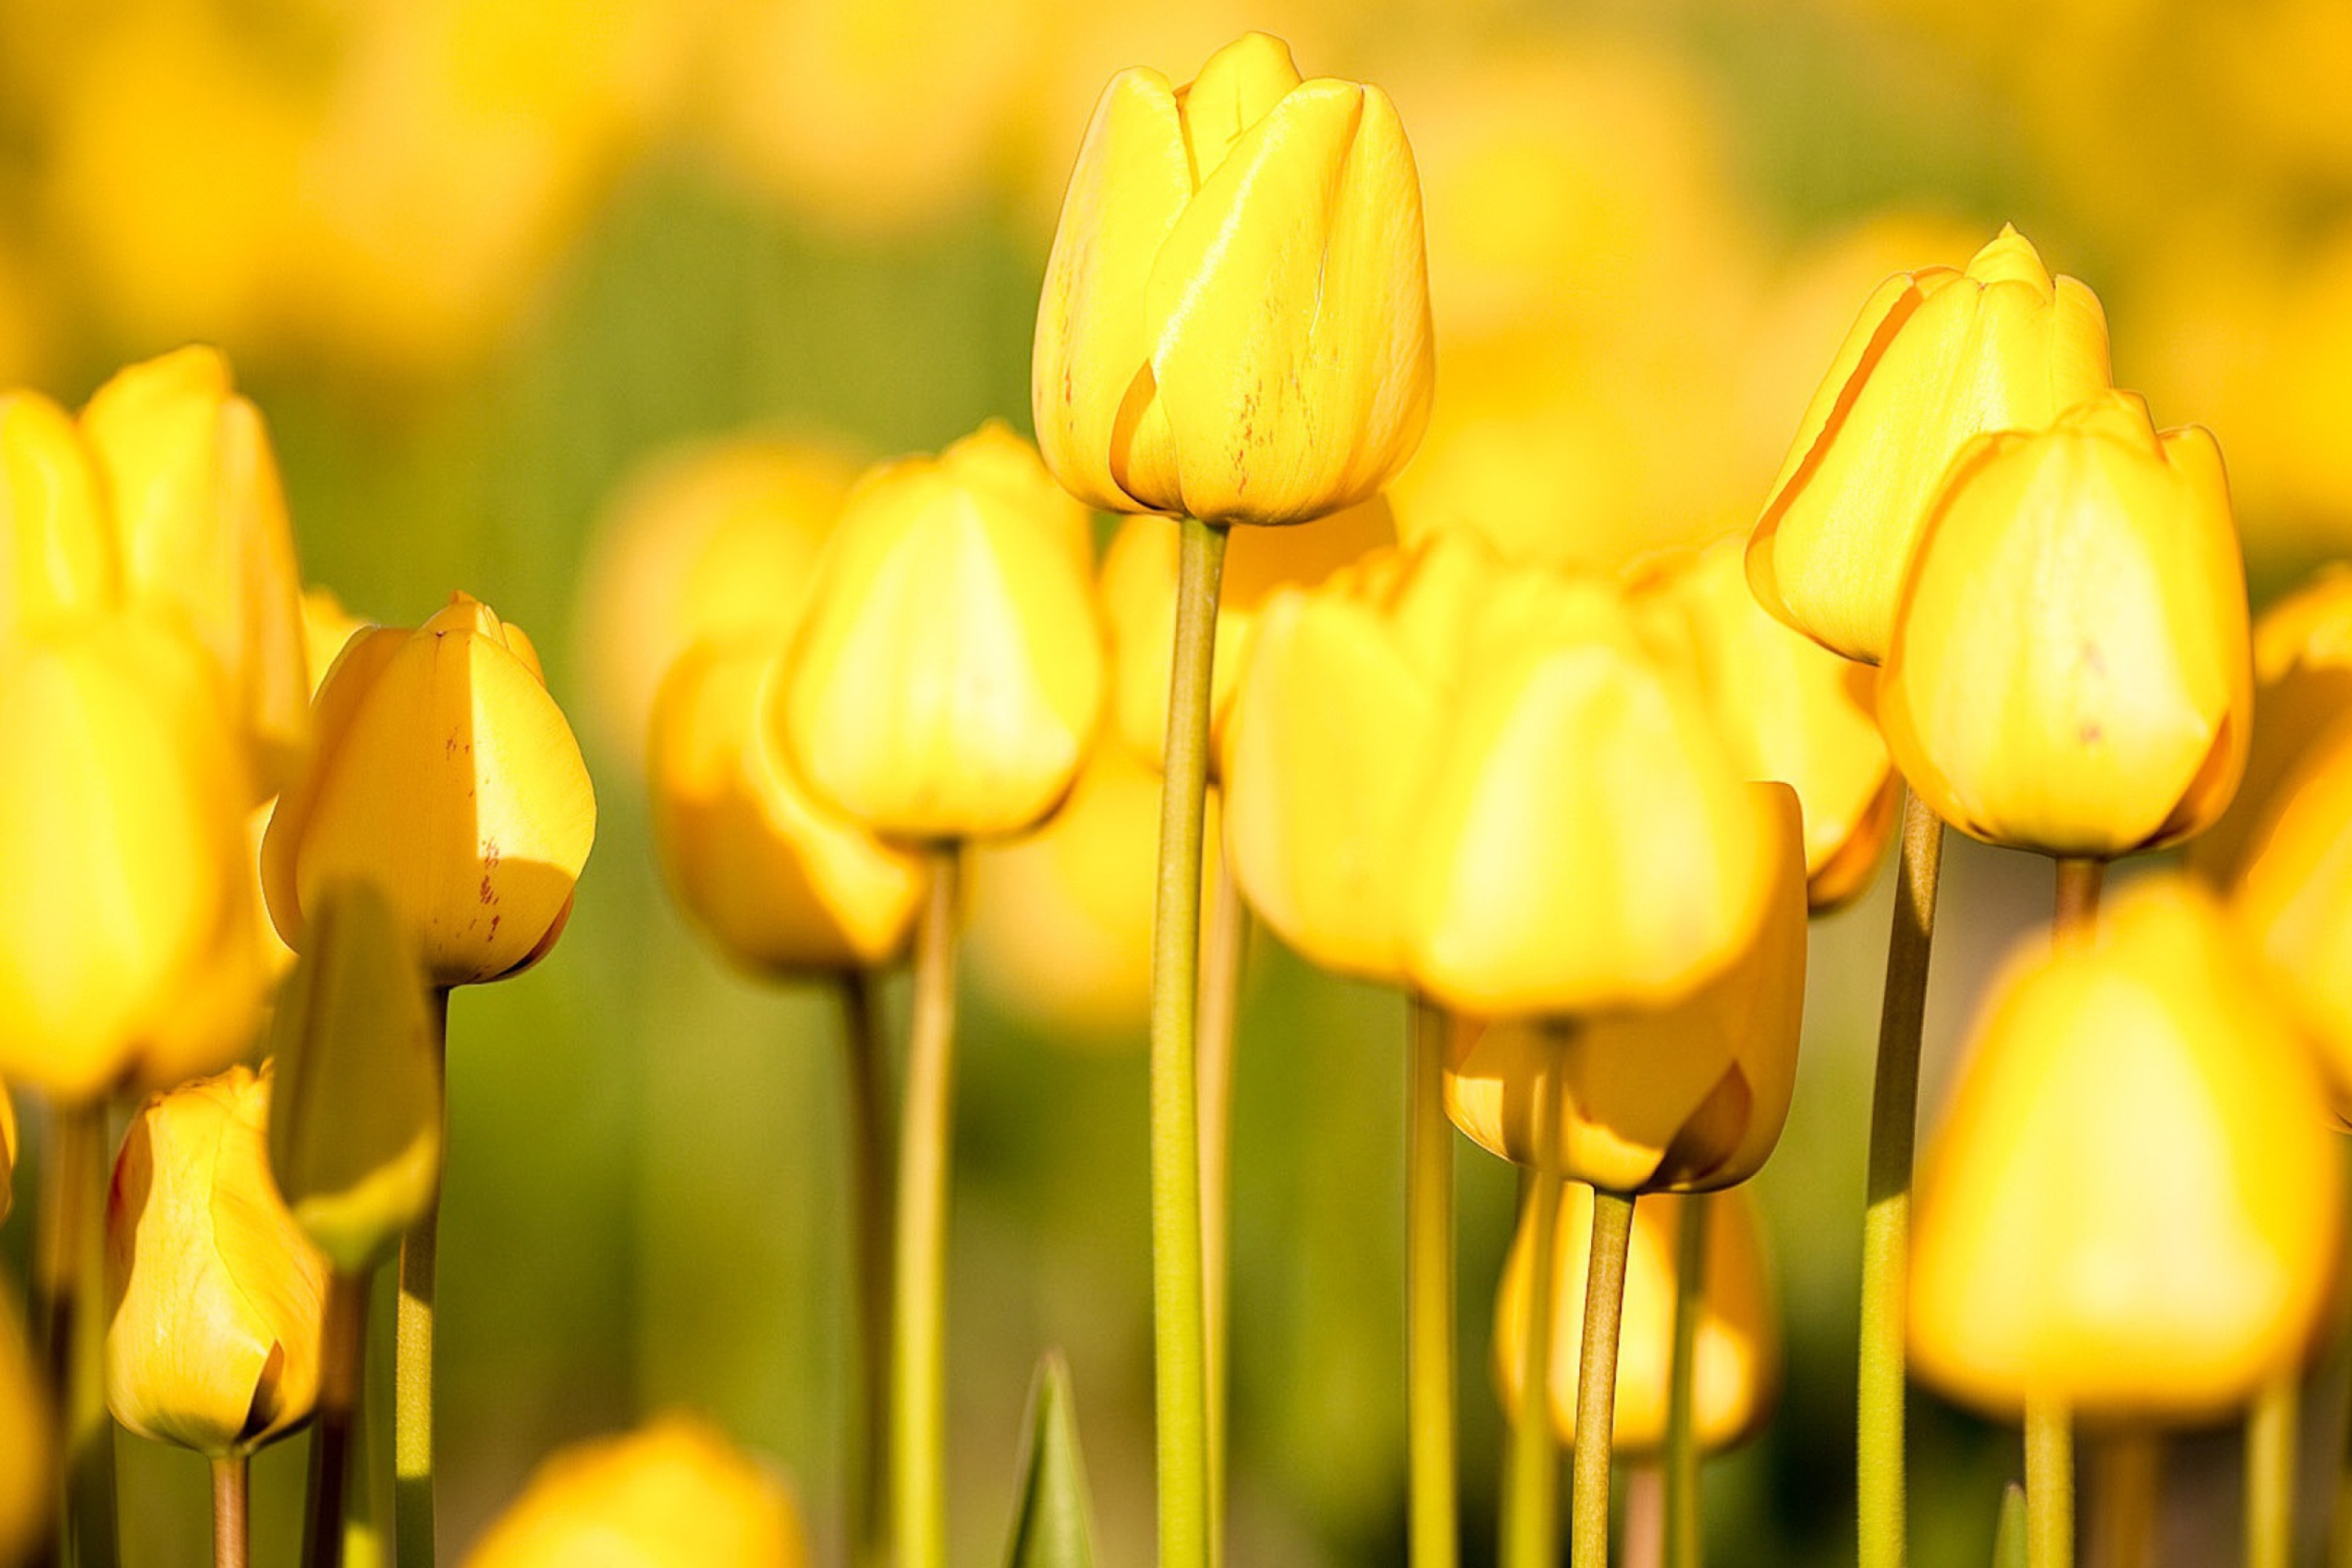 Обои на телефон красивые тюльпаны. Желтые тюльпаны. Жёлтый цветок. Желтые обои. Обои цветы тюльпаны.